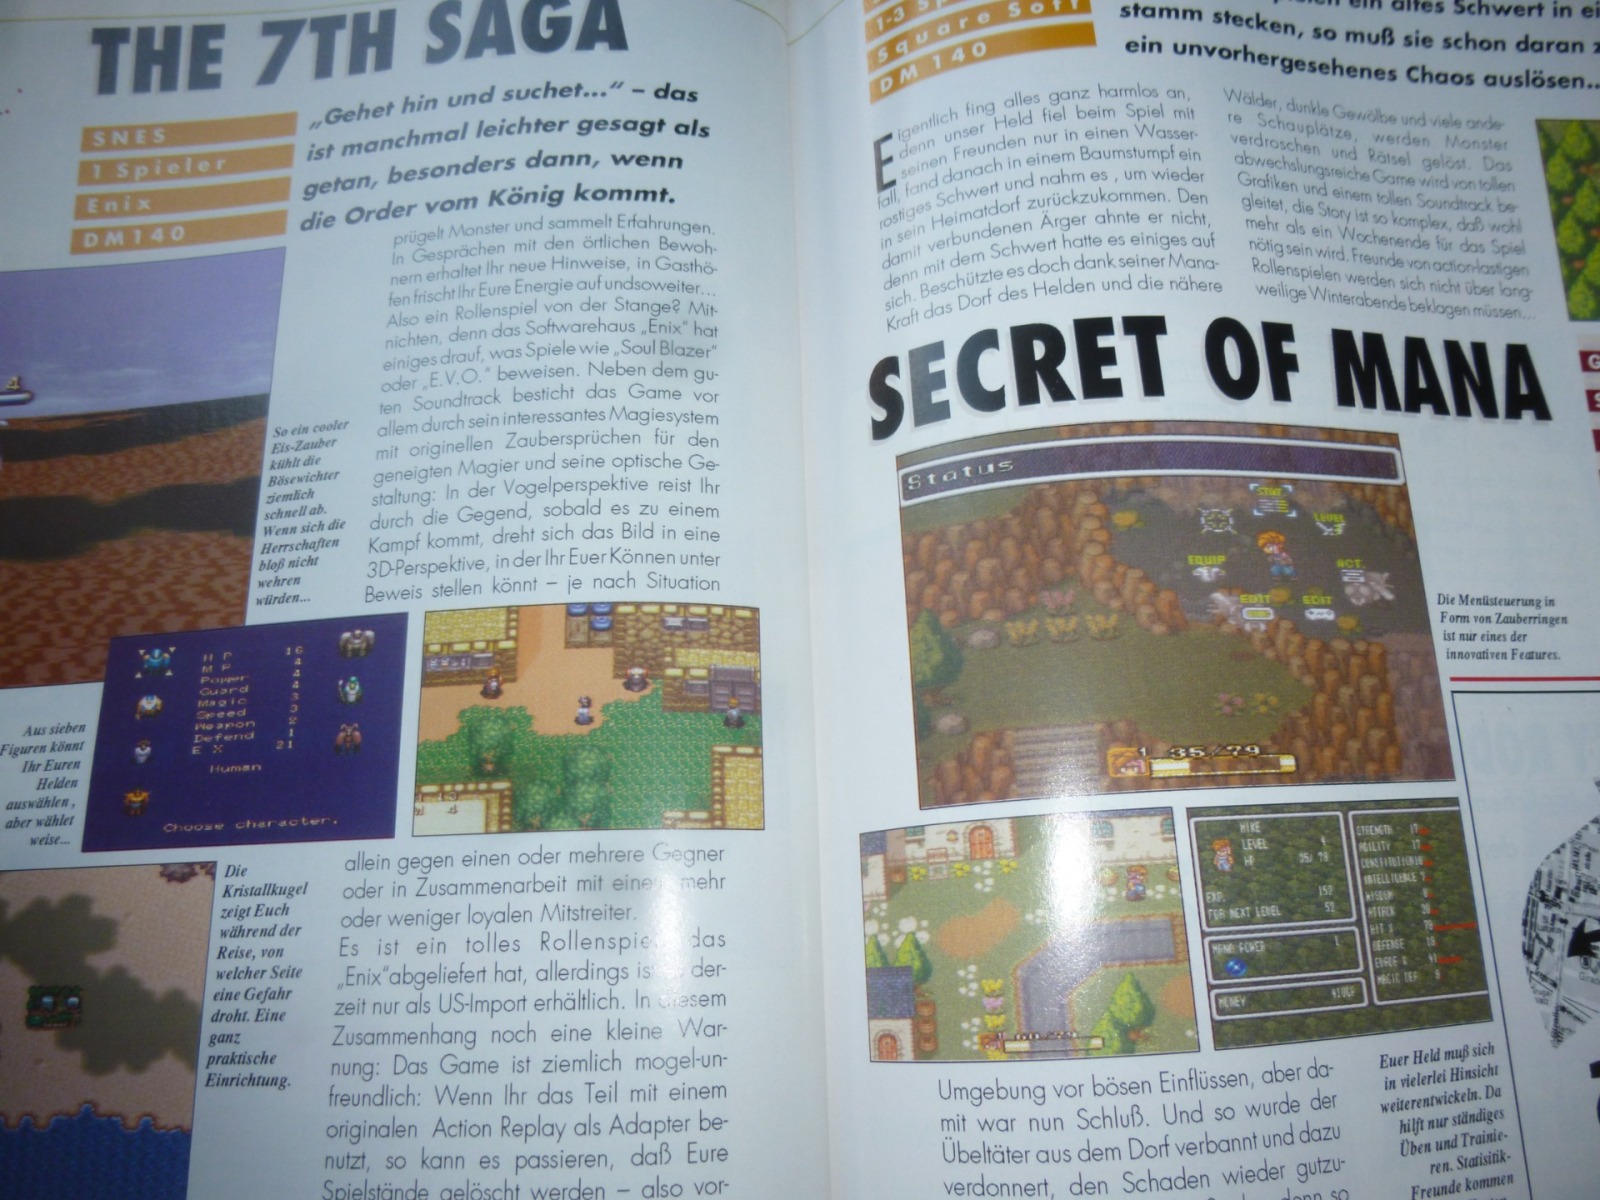 TOTAL Das unabhängige Magazin - 100 Nintendo - Ausgabe 12/93 1993 28